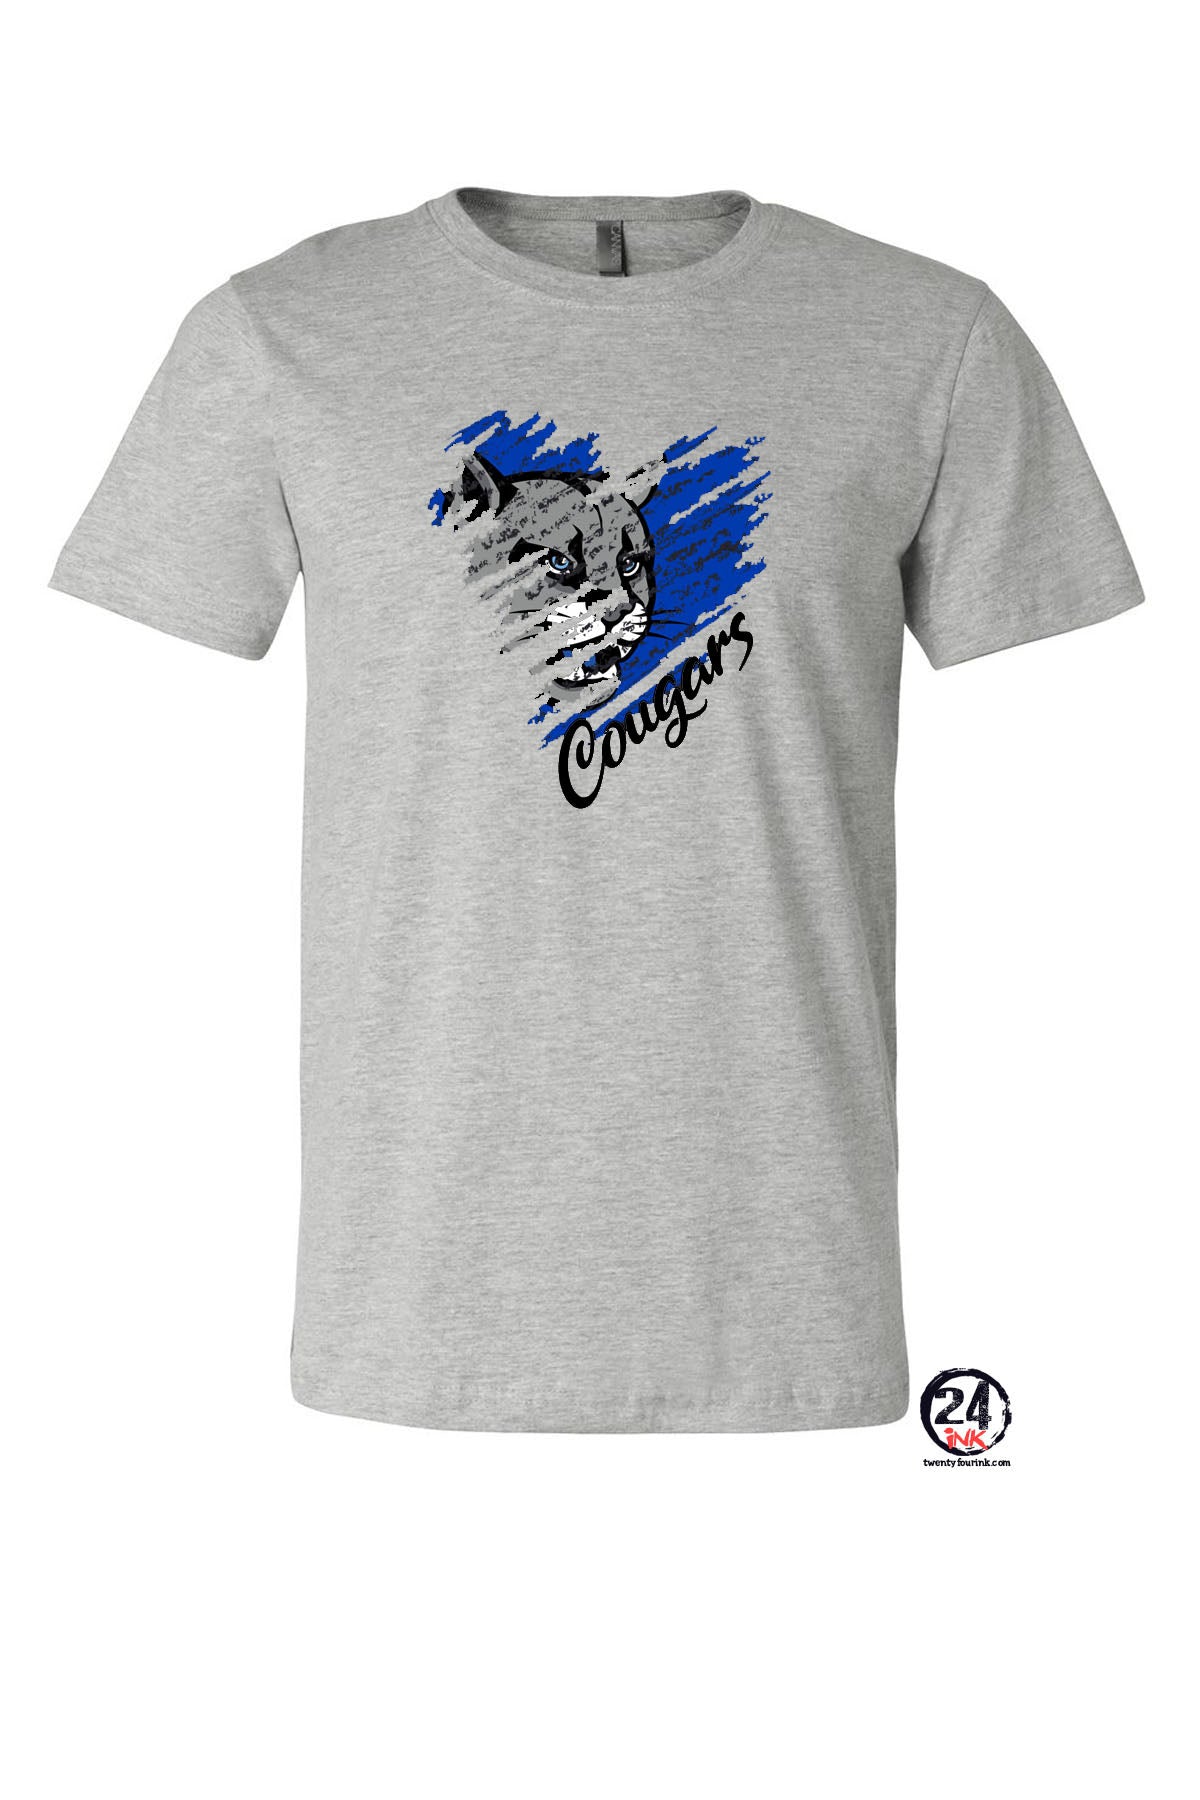 Stillwater design 7 T-Shirt